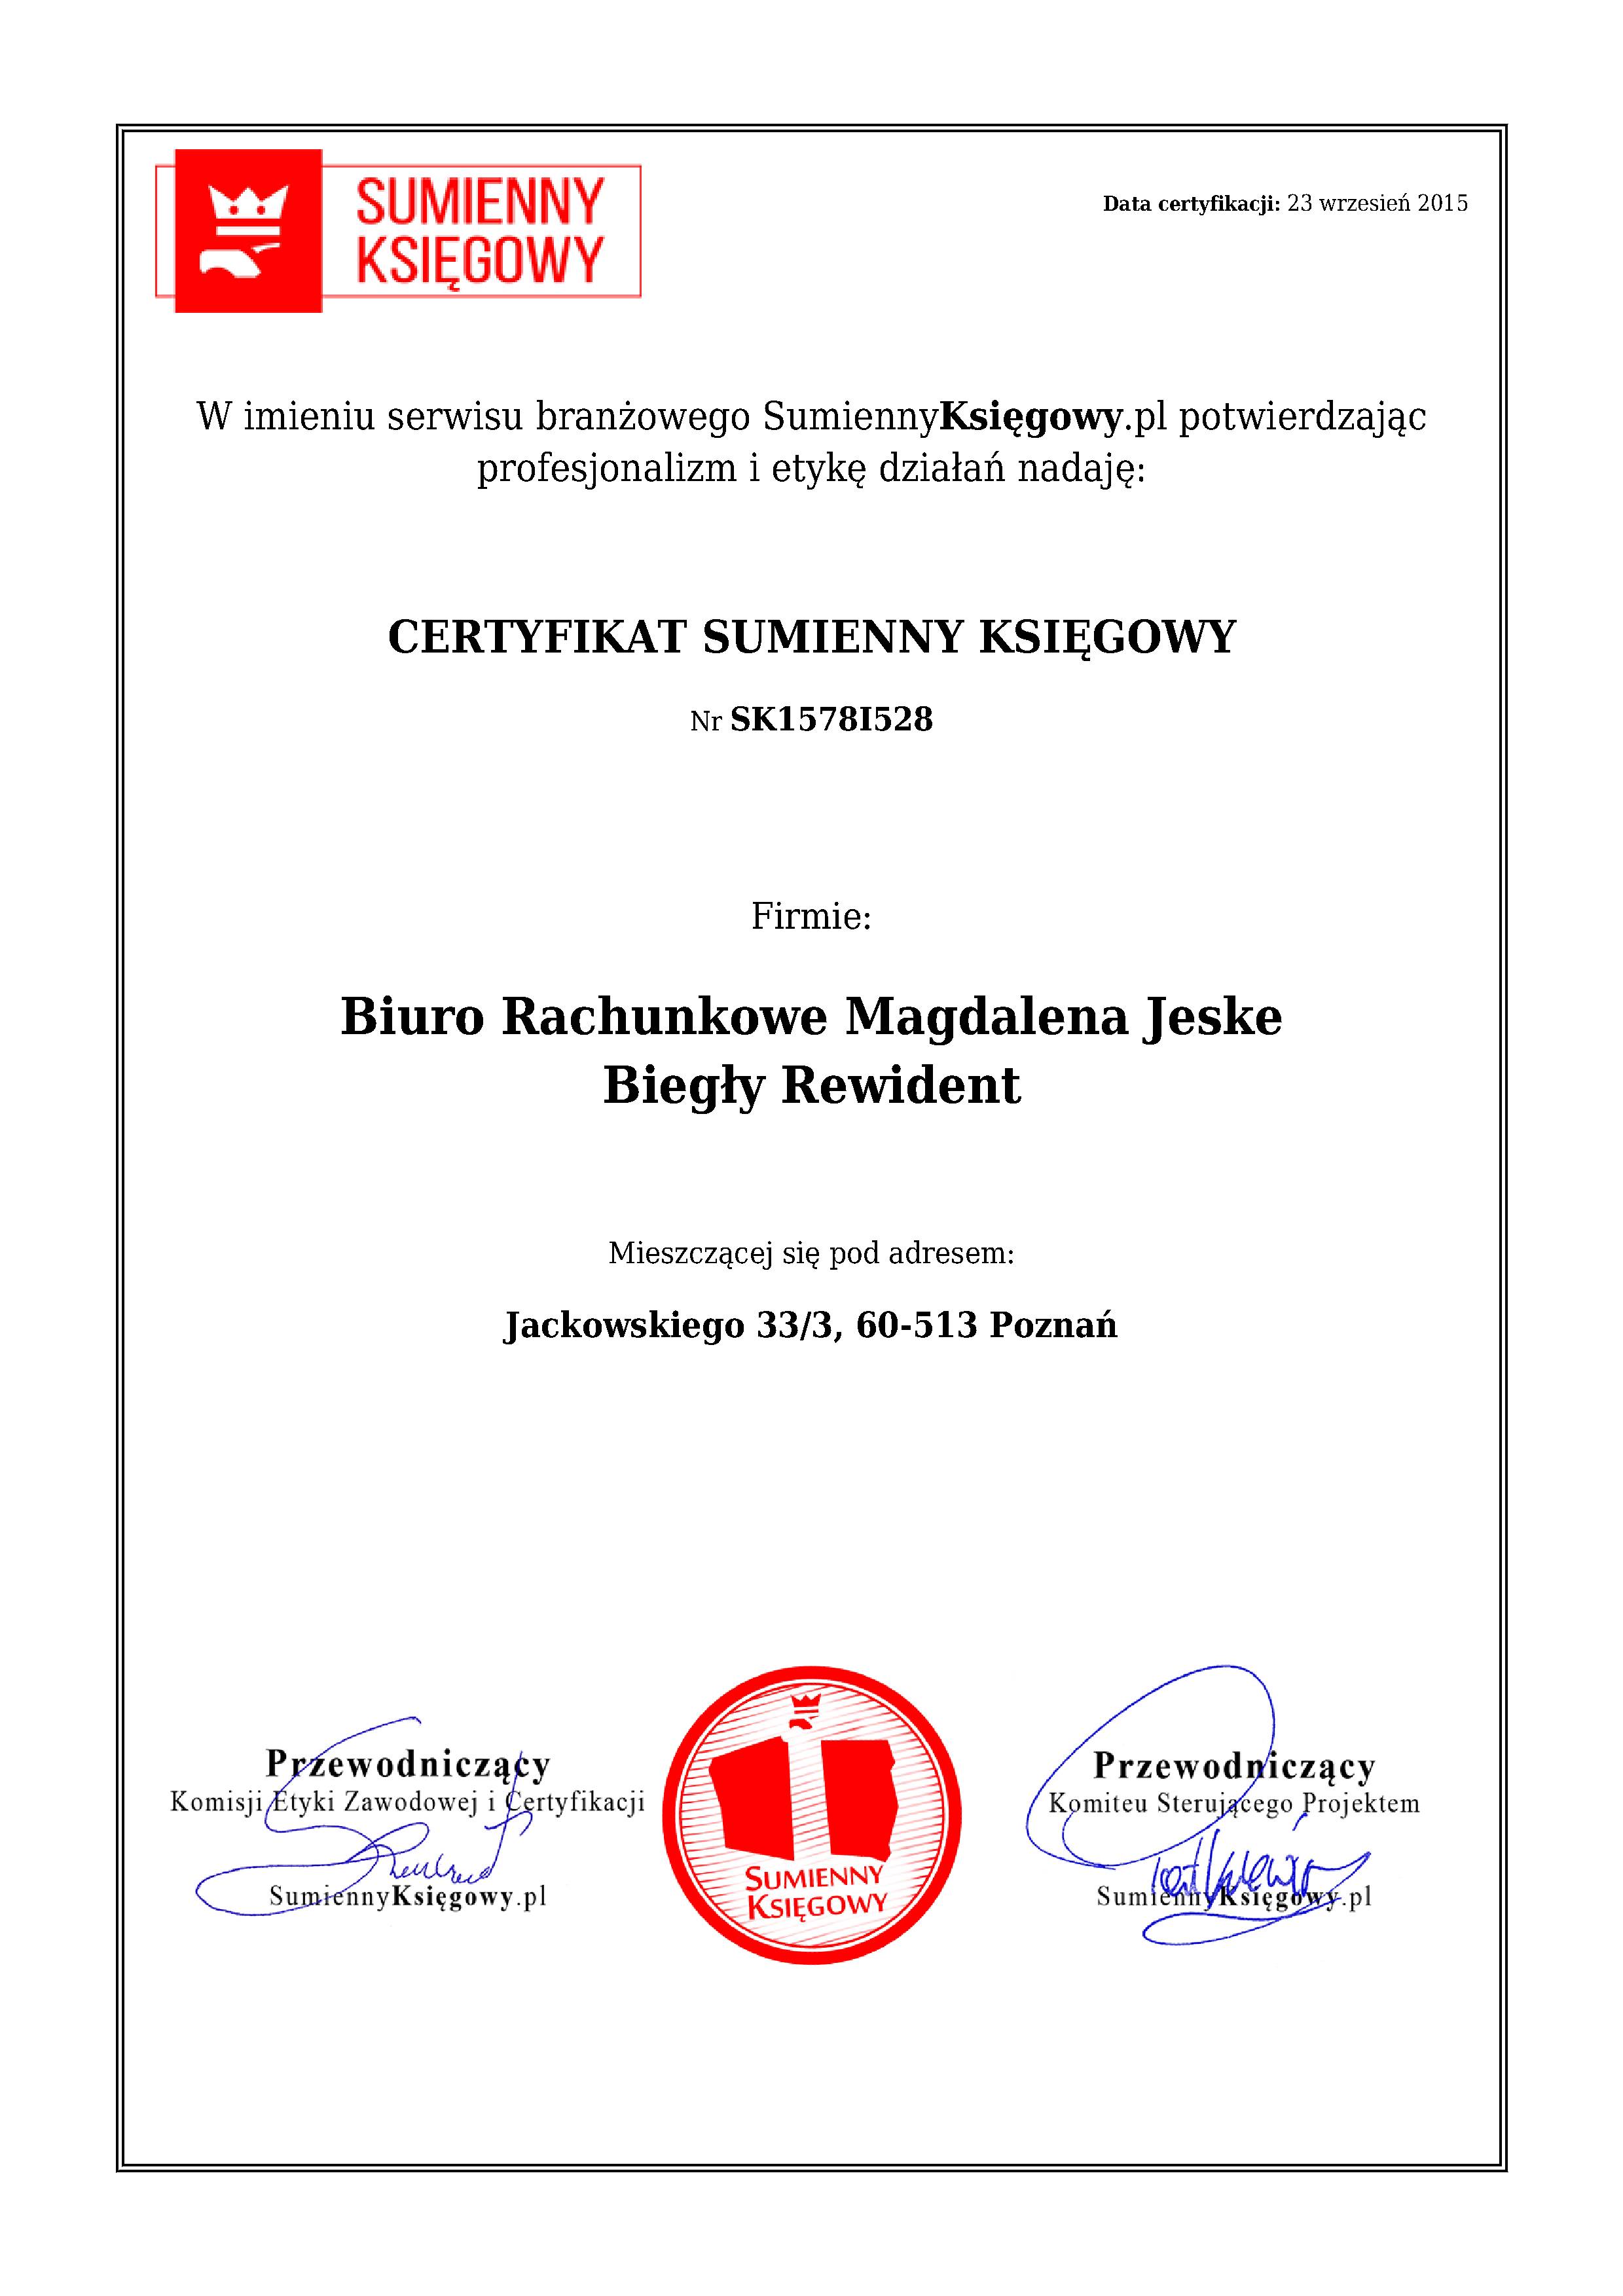 Certyfikat Biuro Rachunkowe Magdalena Jeske Biegły Rewident